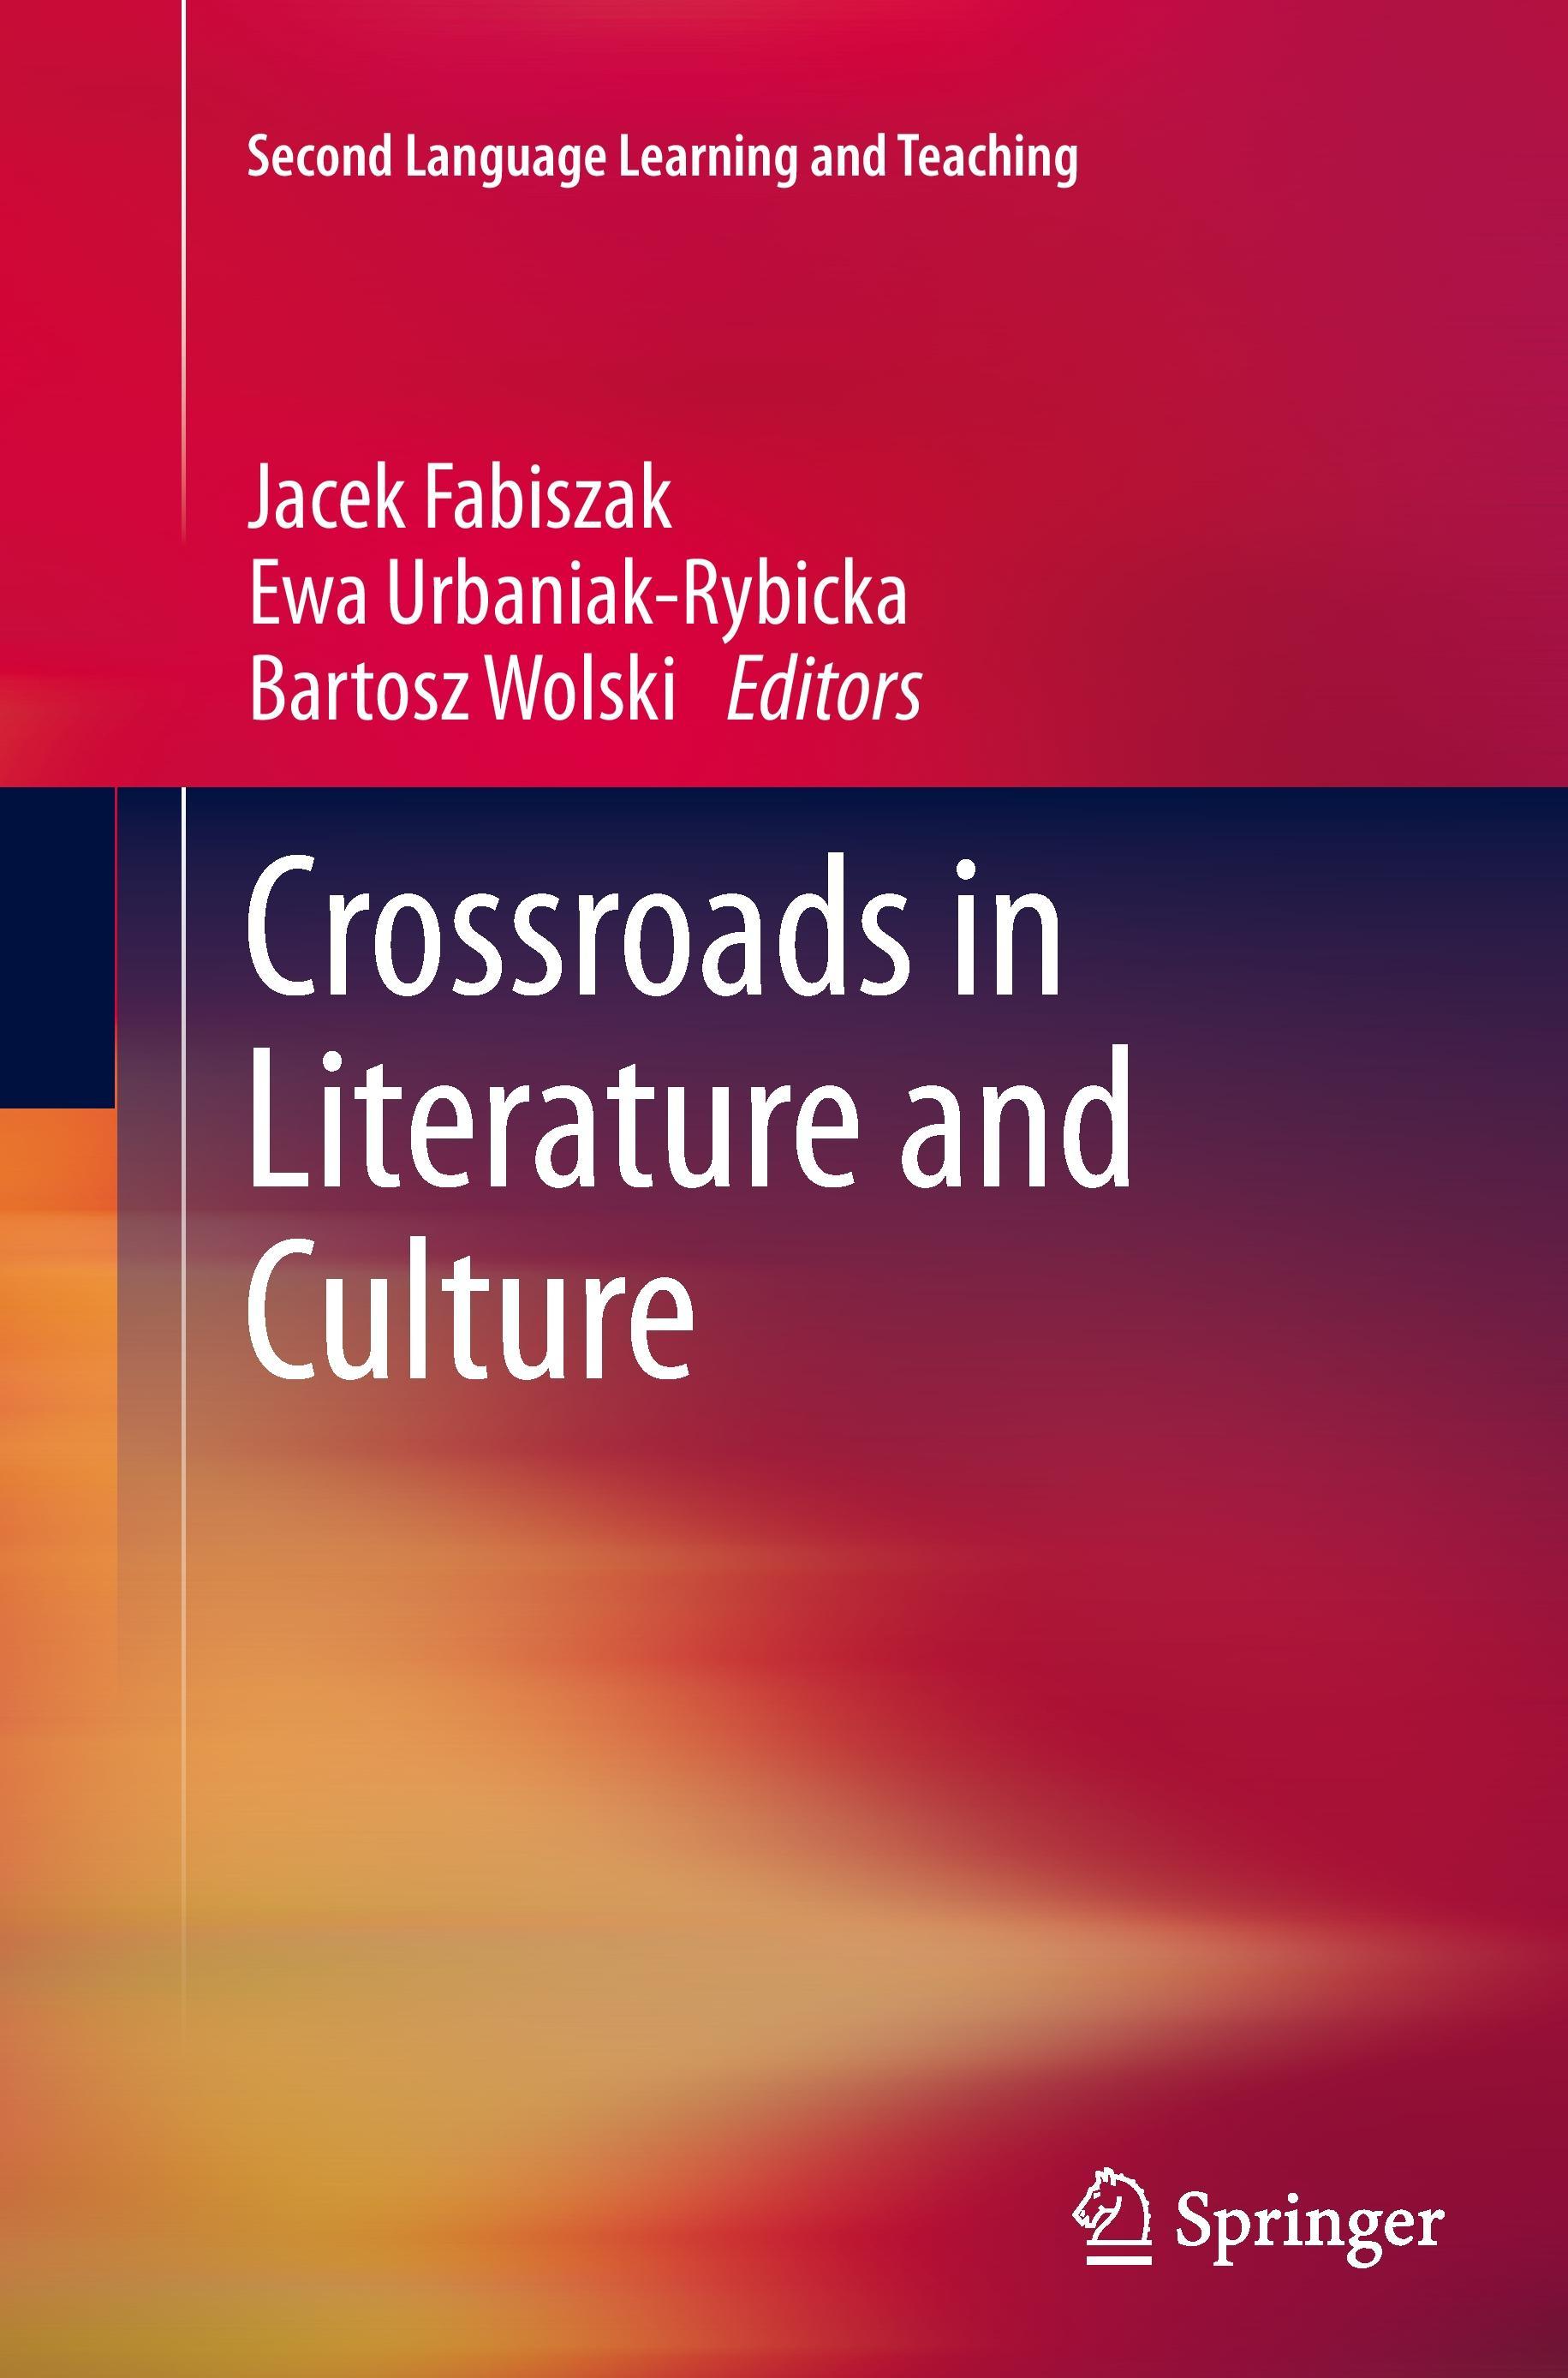 Crossroads in Literature and Culture - Fabiszak, Jacek|Urbaniak-Rybicka, Ewa|Wolski, Bartosz